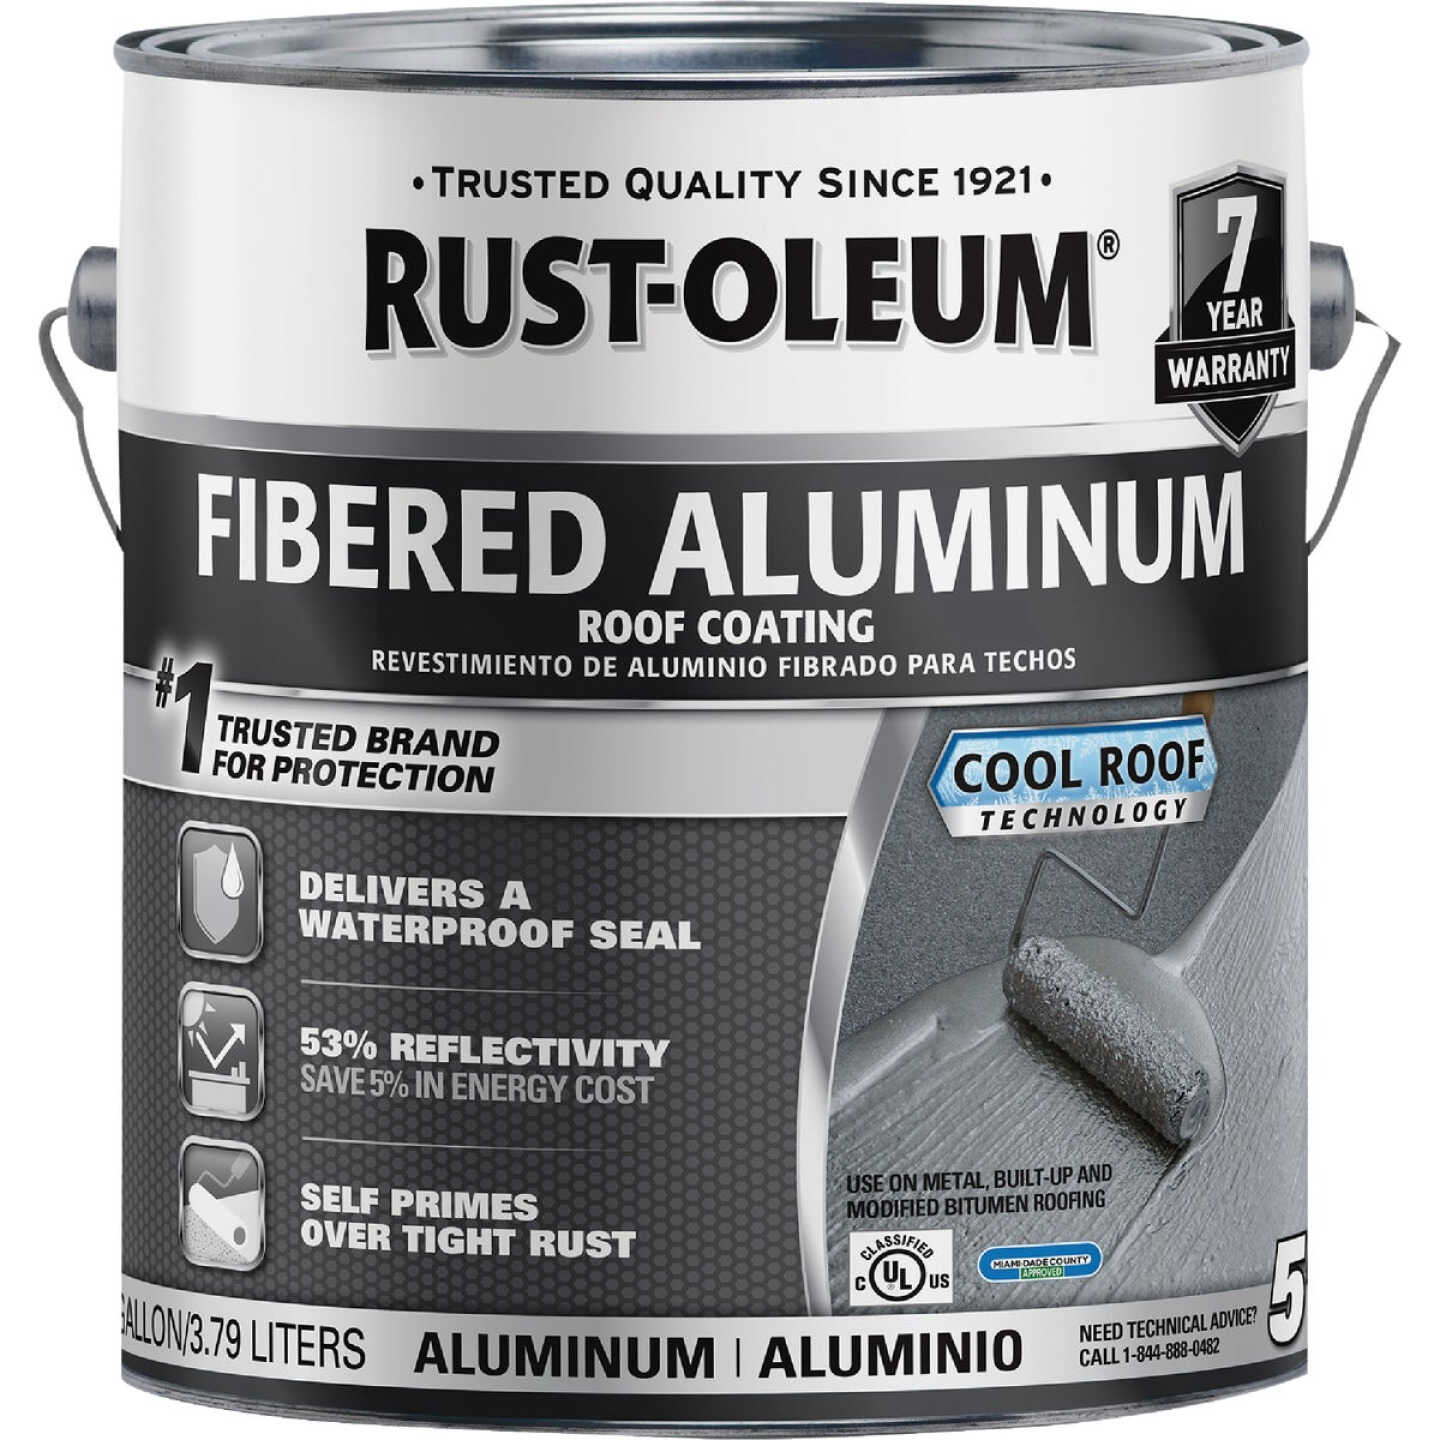 Rust-Oleum 510 1 Gal. 7-Year Fibered Aluminum Roof Coating Image 1